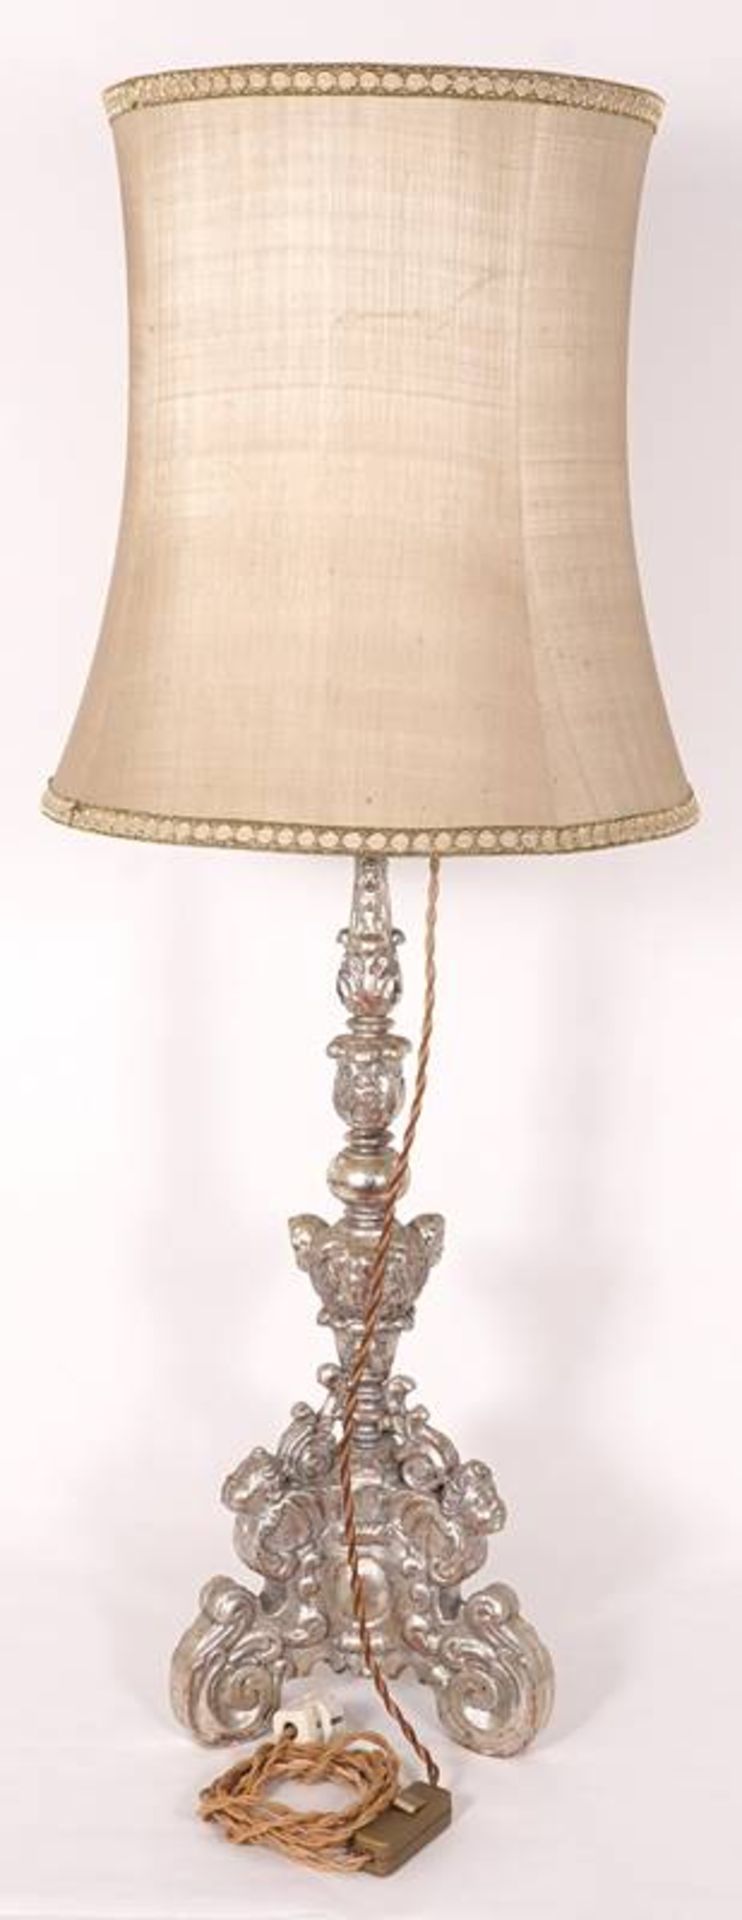 Floor lamp - Image 2 of 6